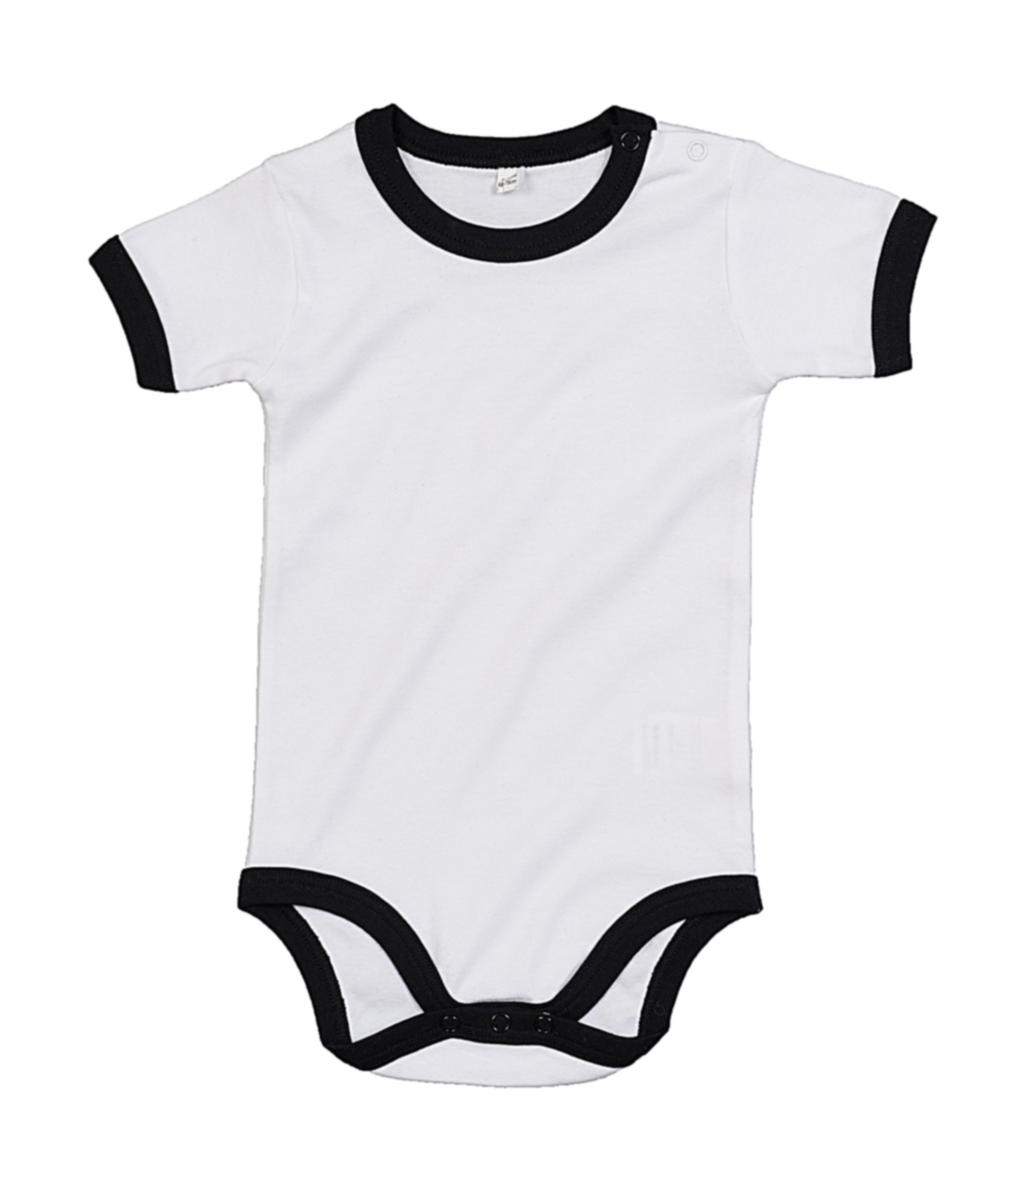  Baby Ringer Bodysuit in Farbe White/Black